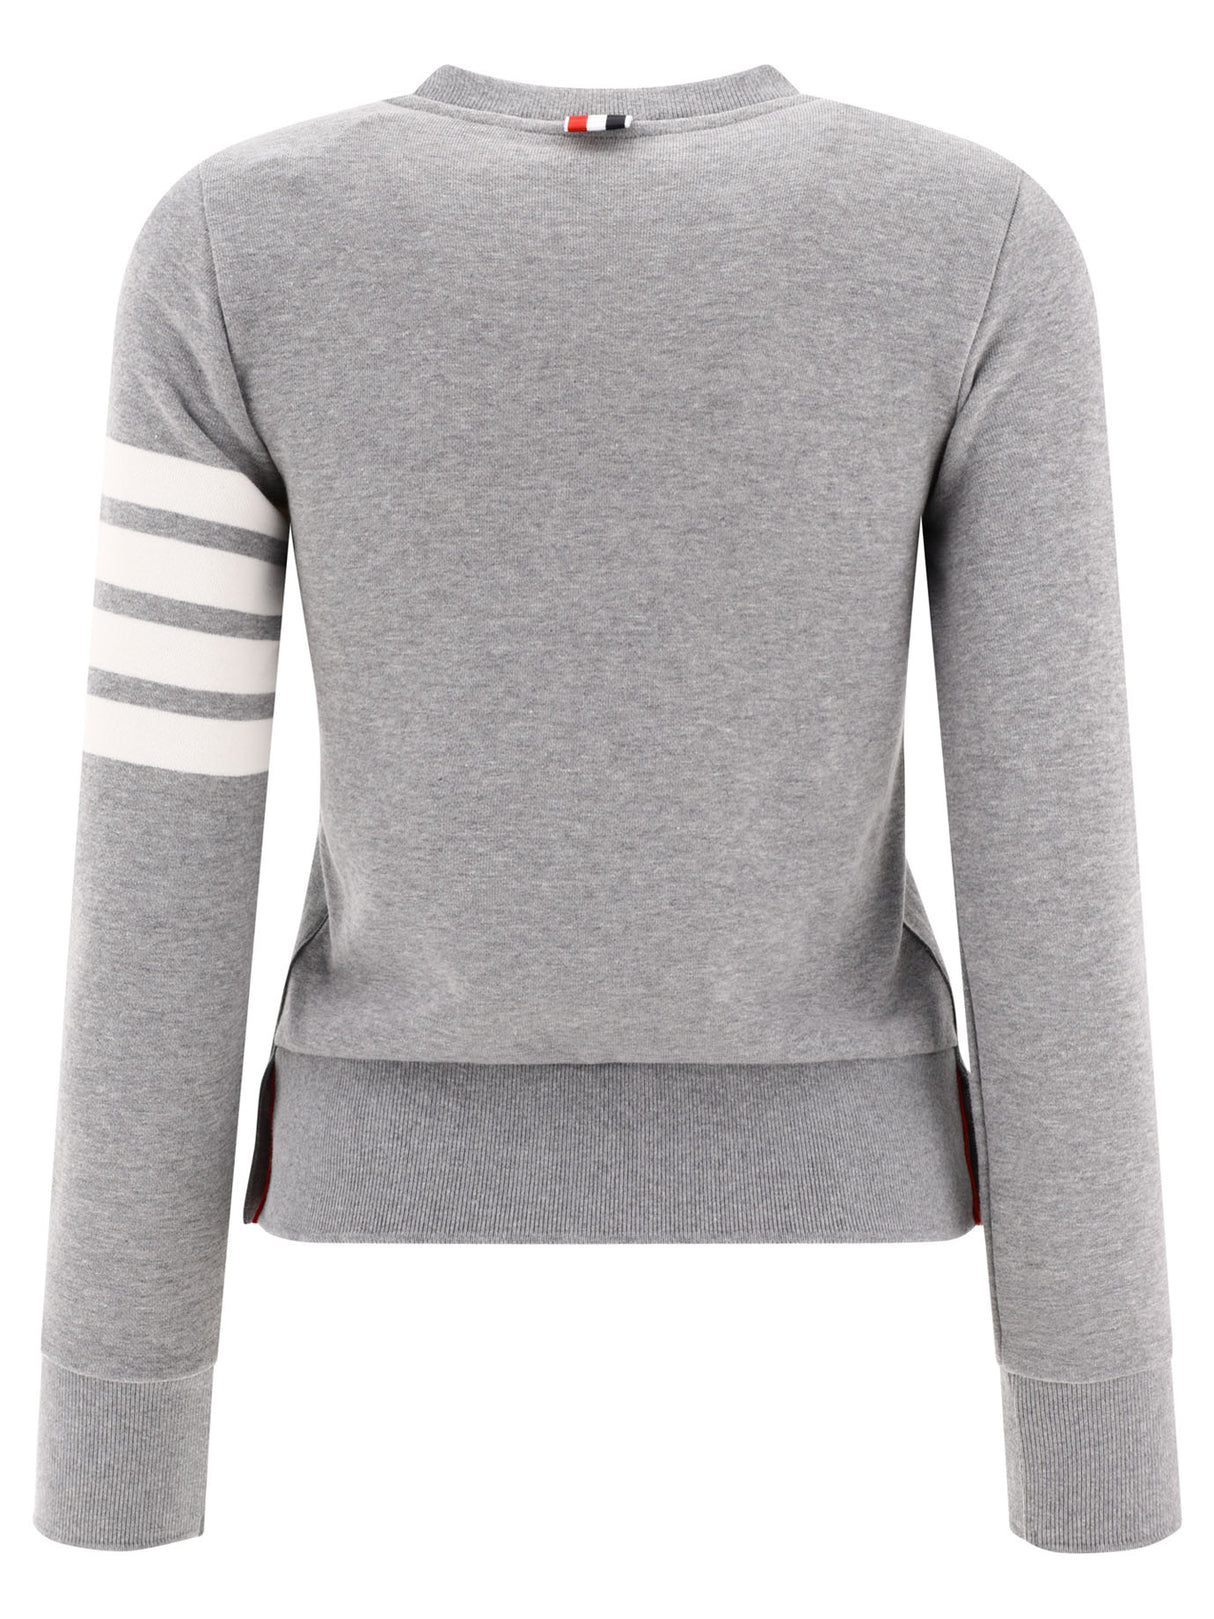 THOM BROWNE Grey 4-Bar Sweatshirt for Women